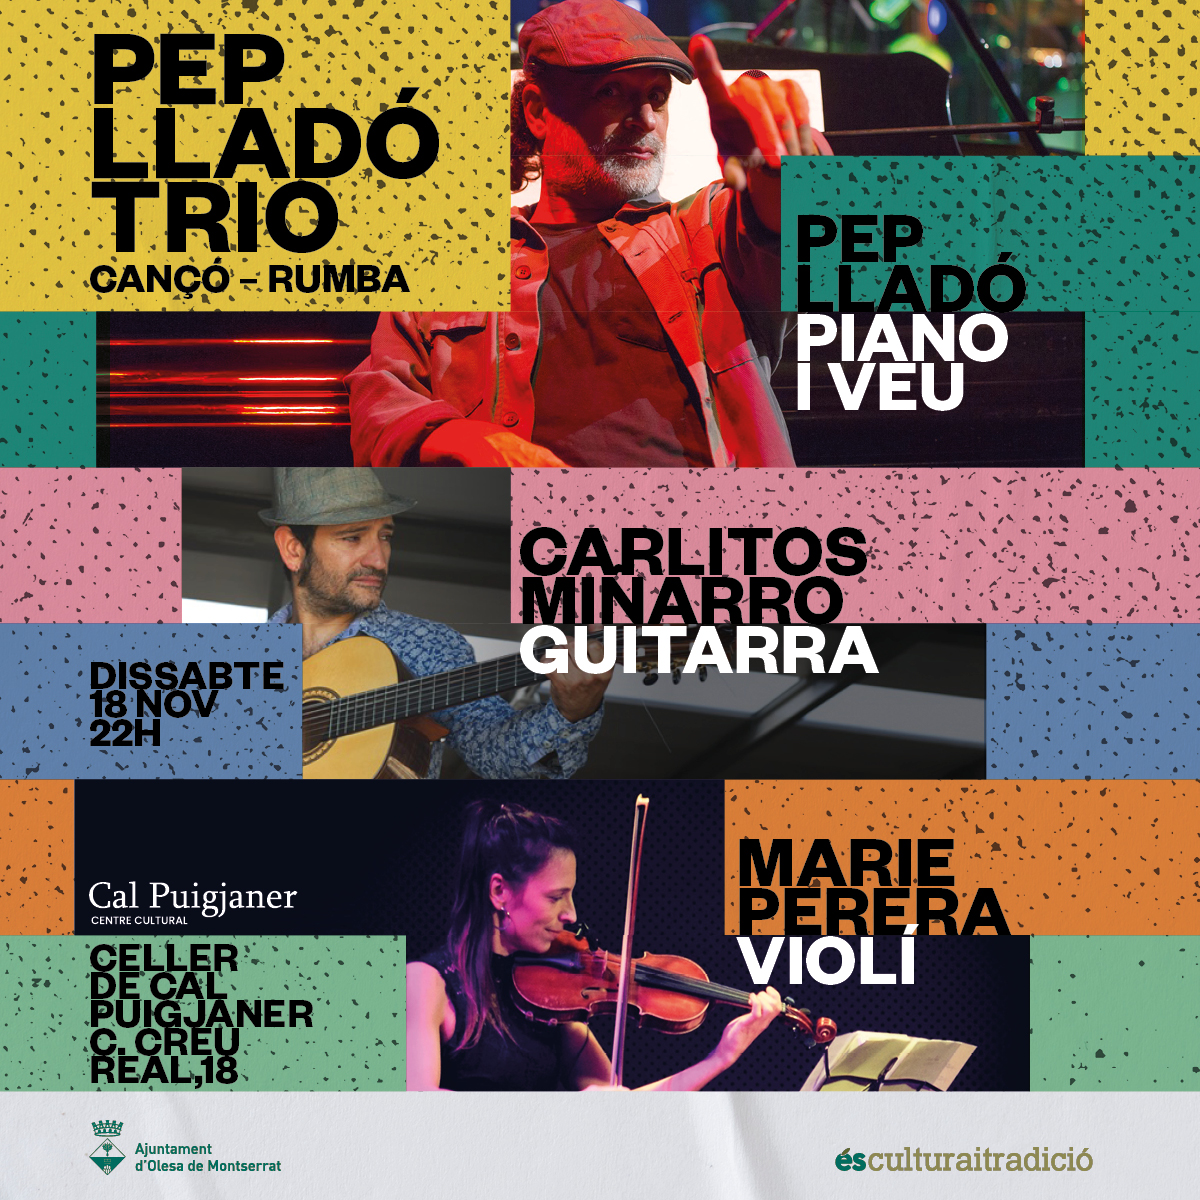 Cartell del concert al Centre Cultural Cal Puigjaner de Pep Lladó Trio